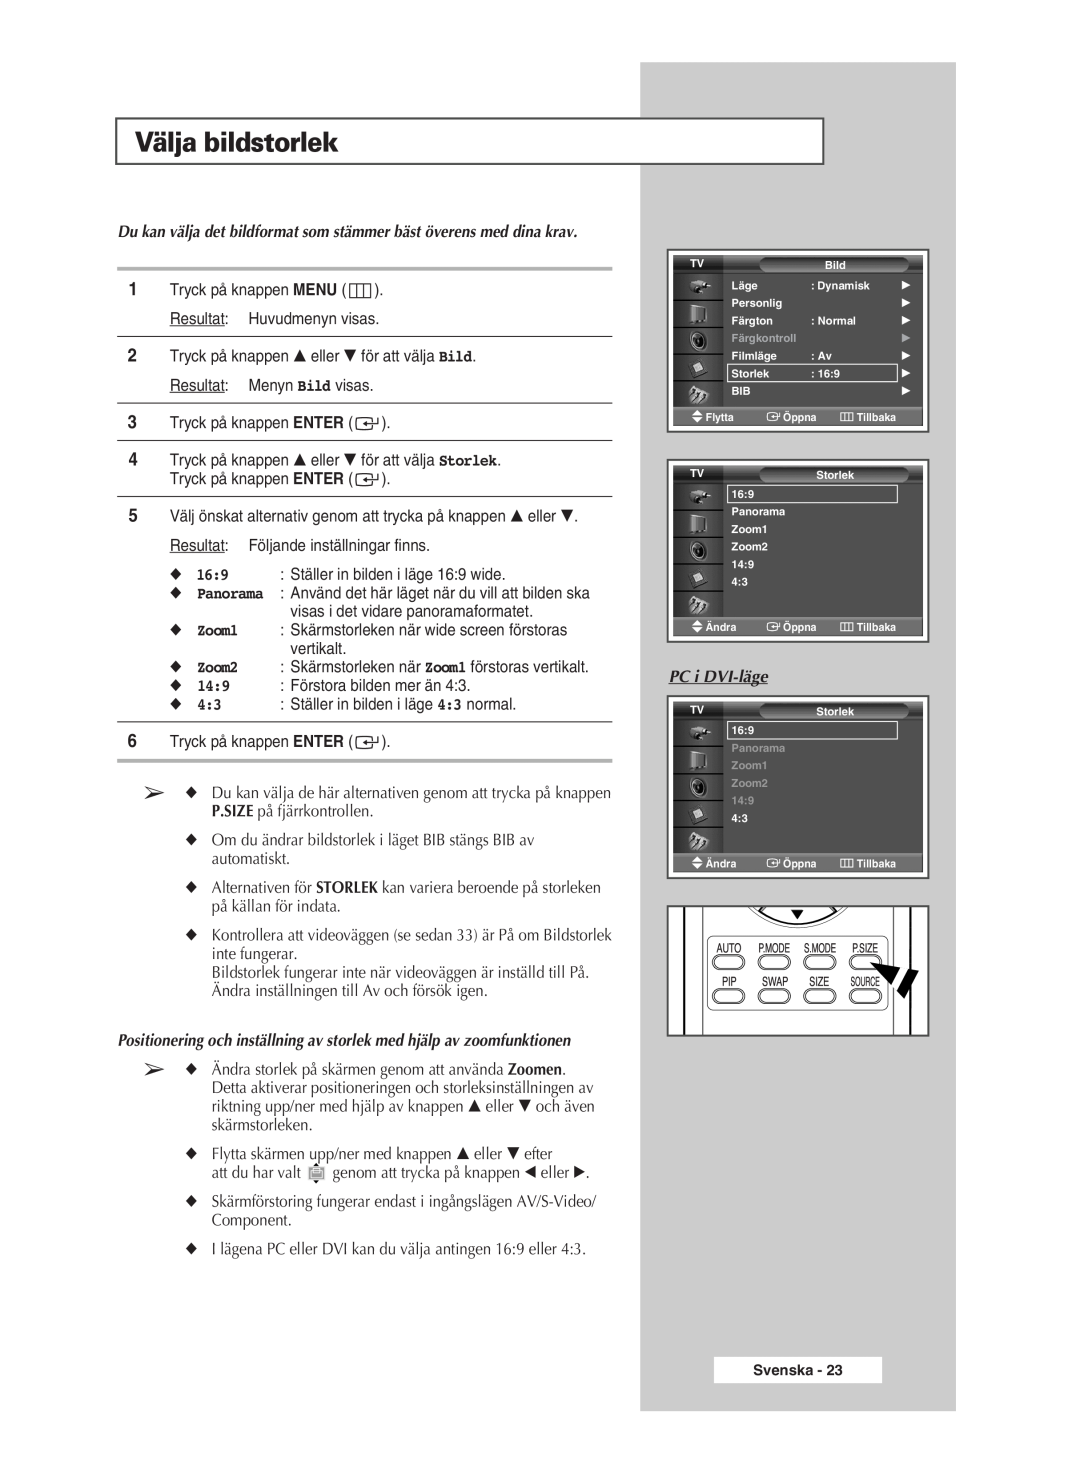 Samsung PPM63M5HSX/EDC manual Välja bildstorlek, Positionering och inställning av storlek med hjälp av zoomfunktionen 